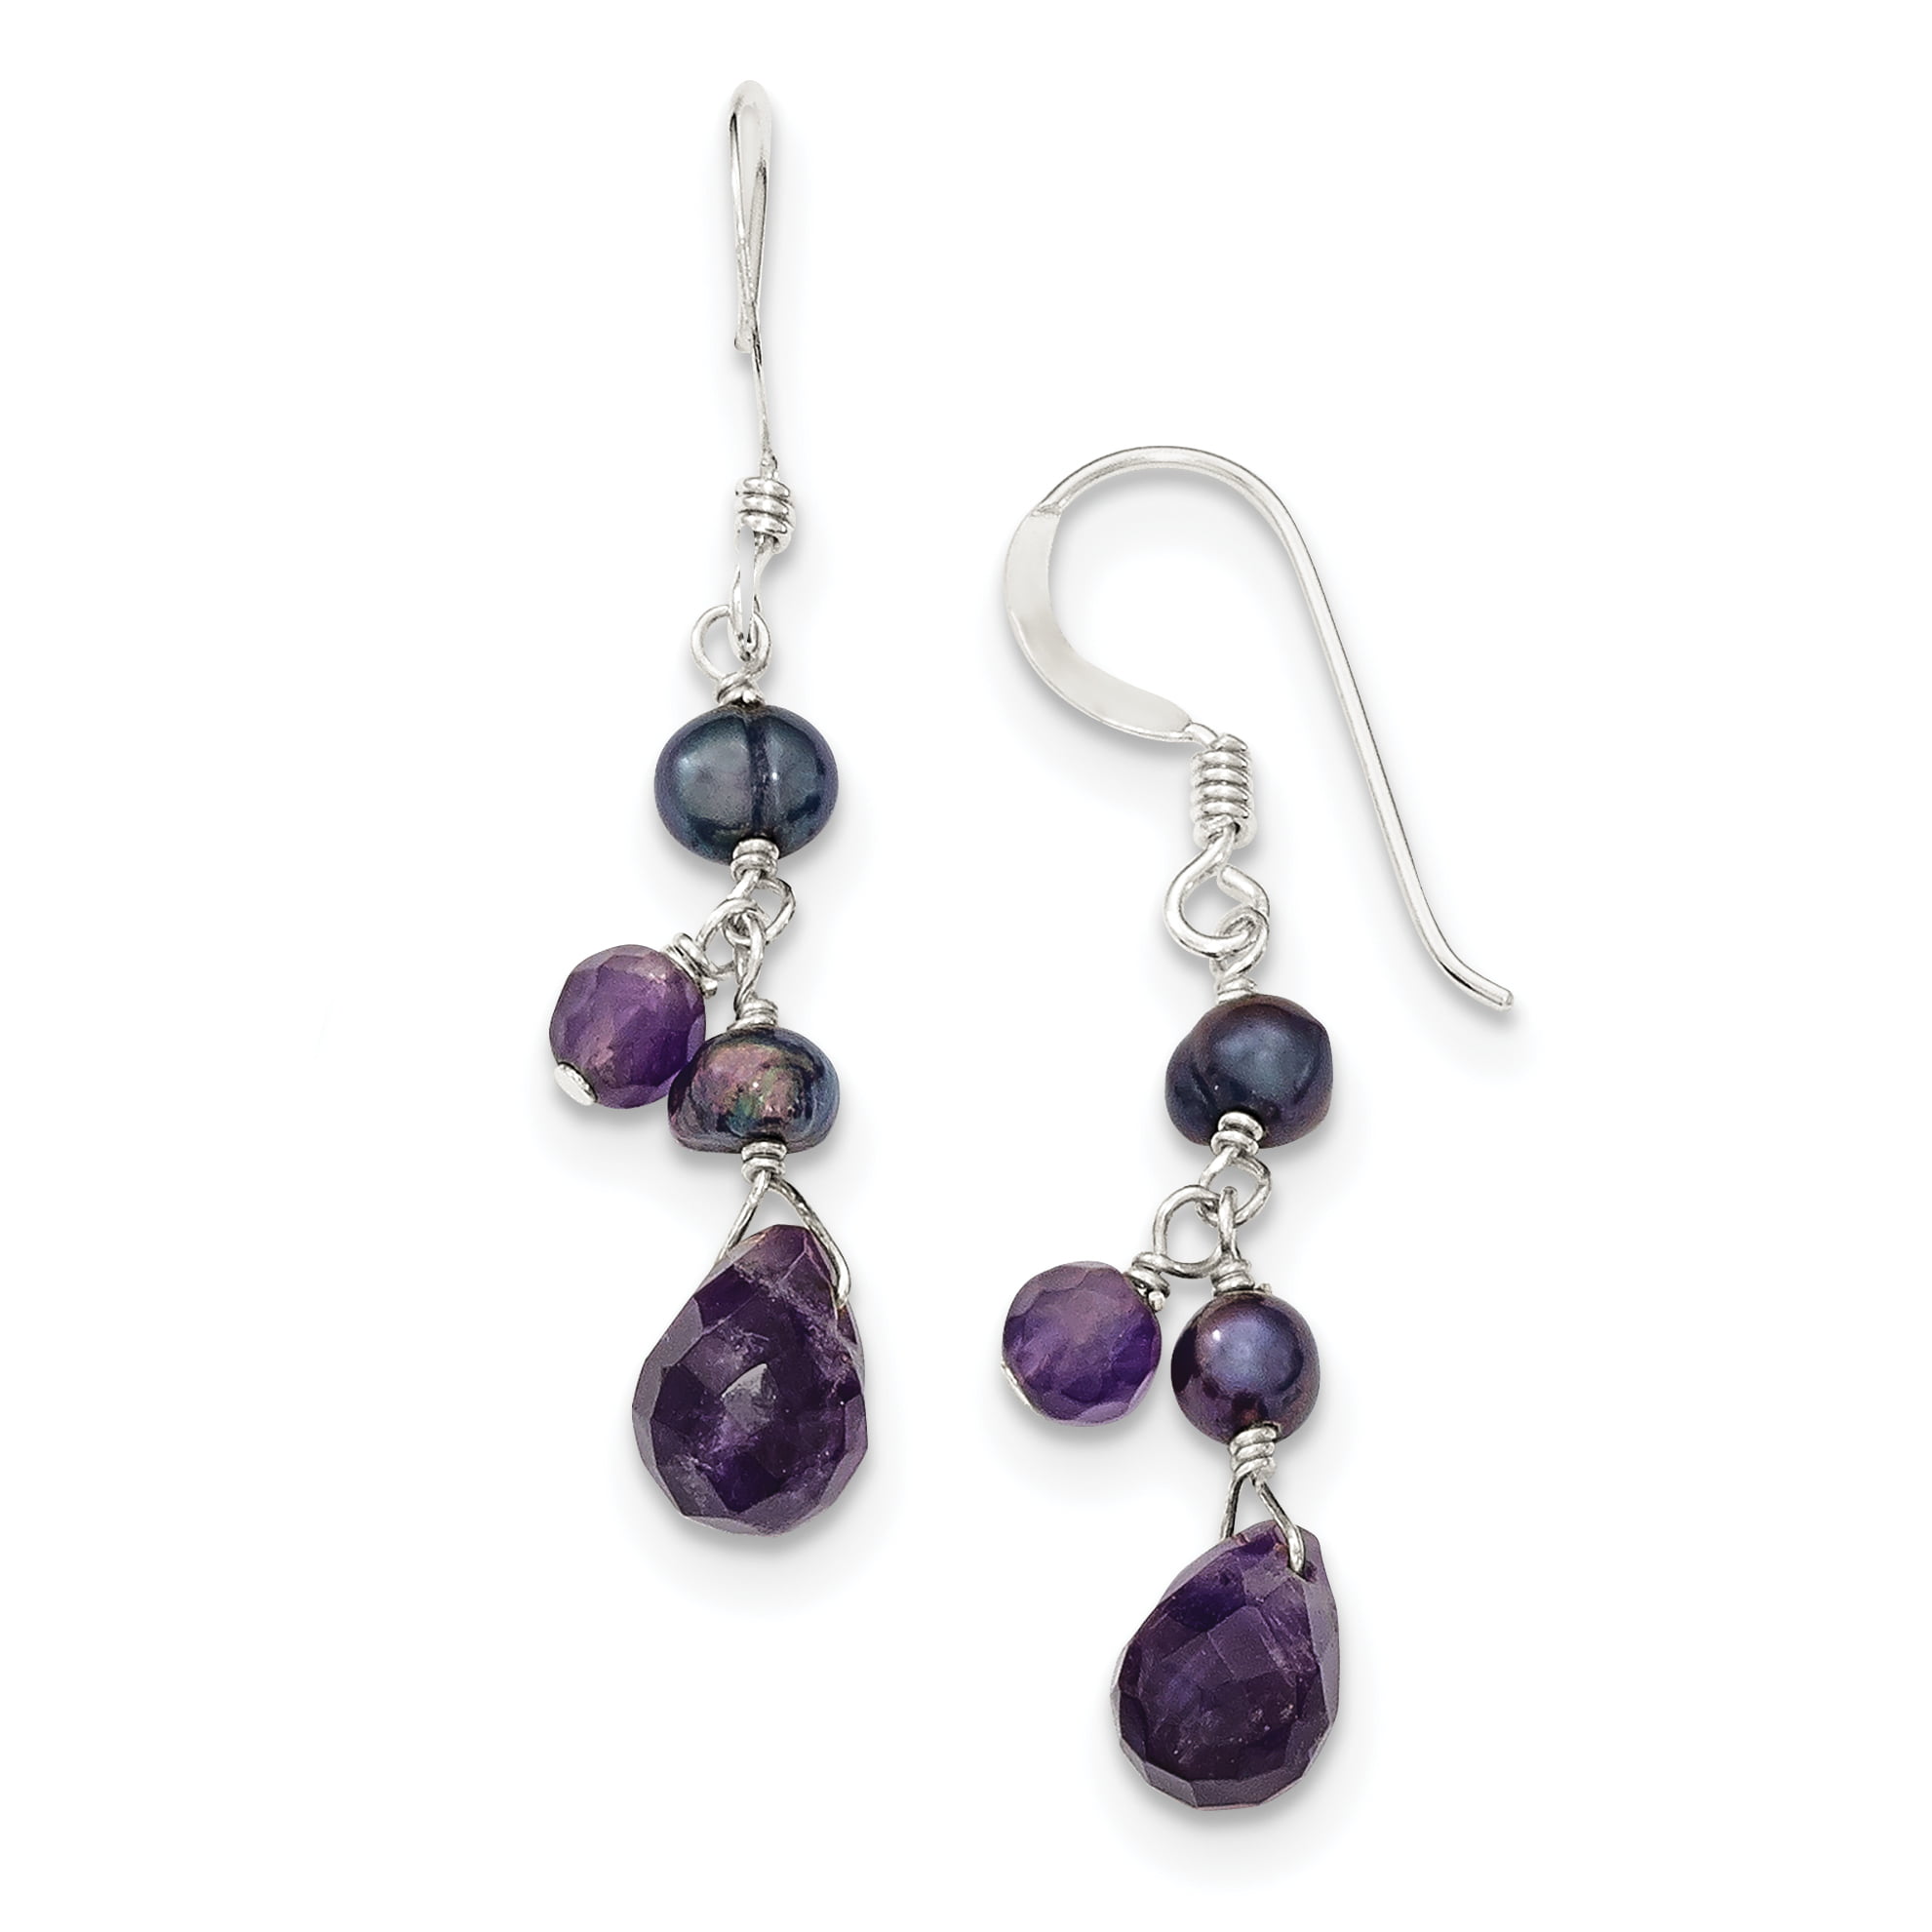 boho silver tone earring long dangle earrings drop heart romantic earrings purple amethyst earrings lilac agate and rhinestones earrings